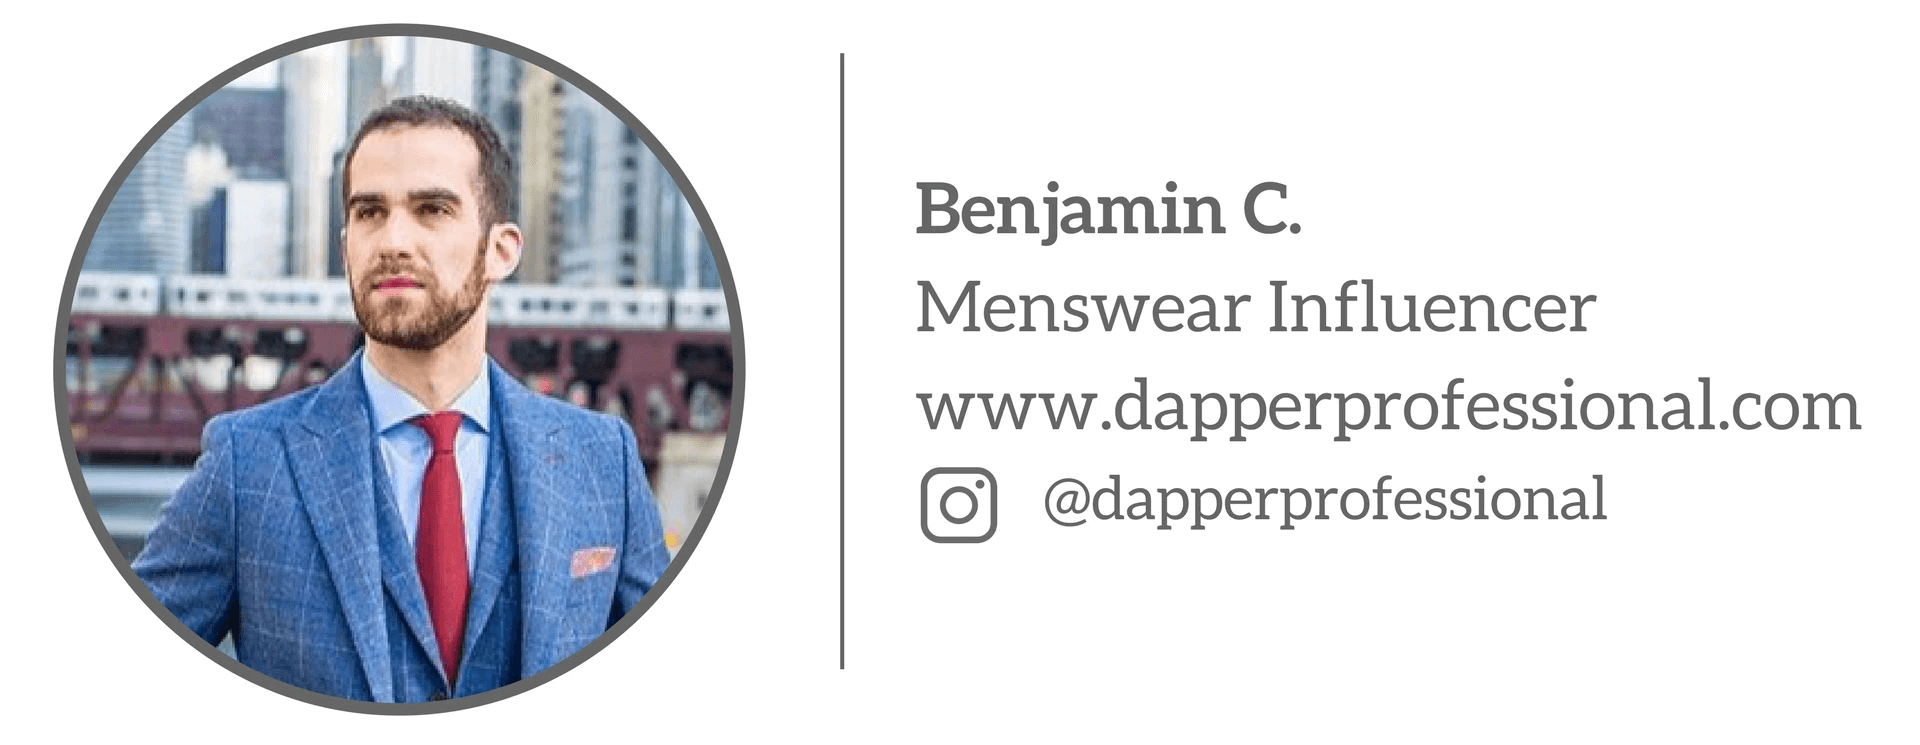 Benjamin C - Menswear Influence “Chăm sóc giày của bạn”